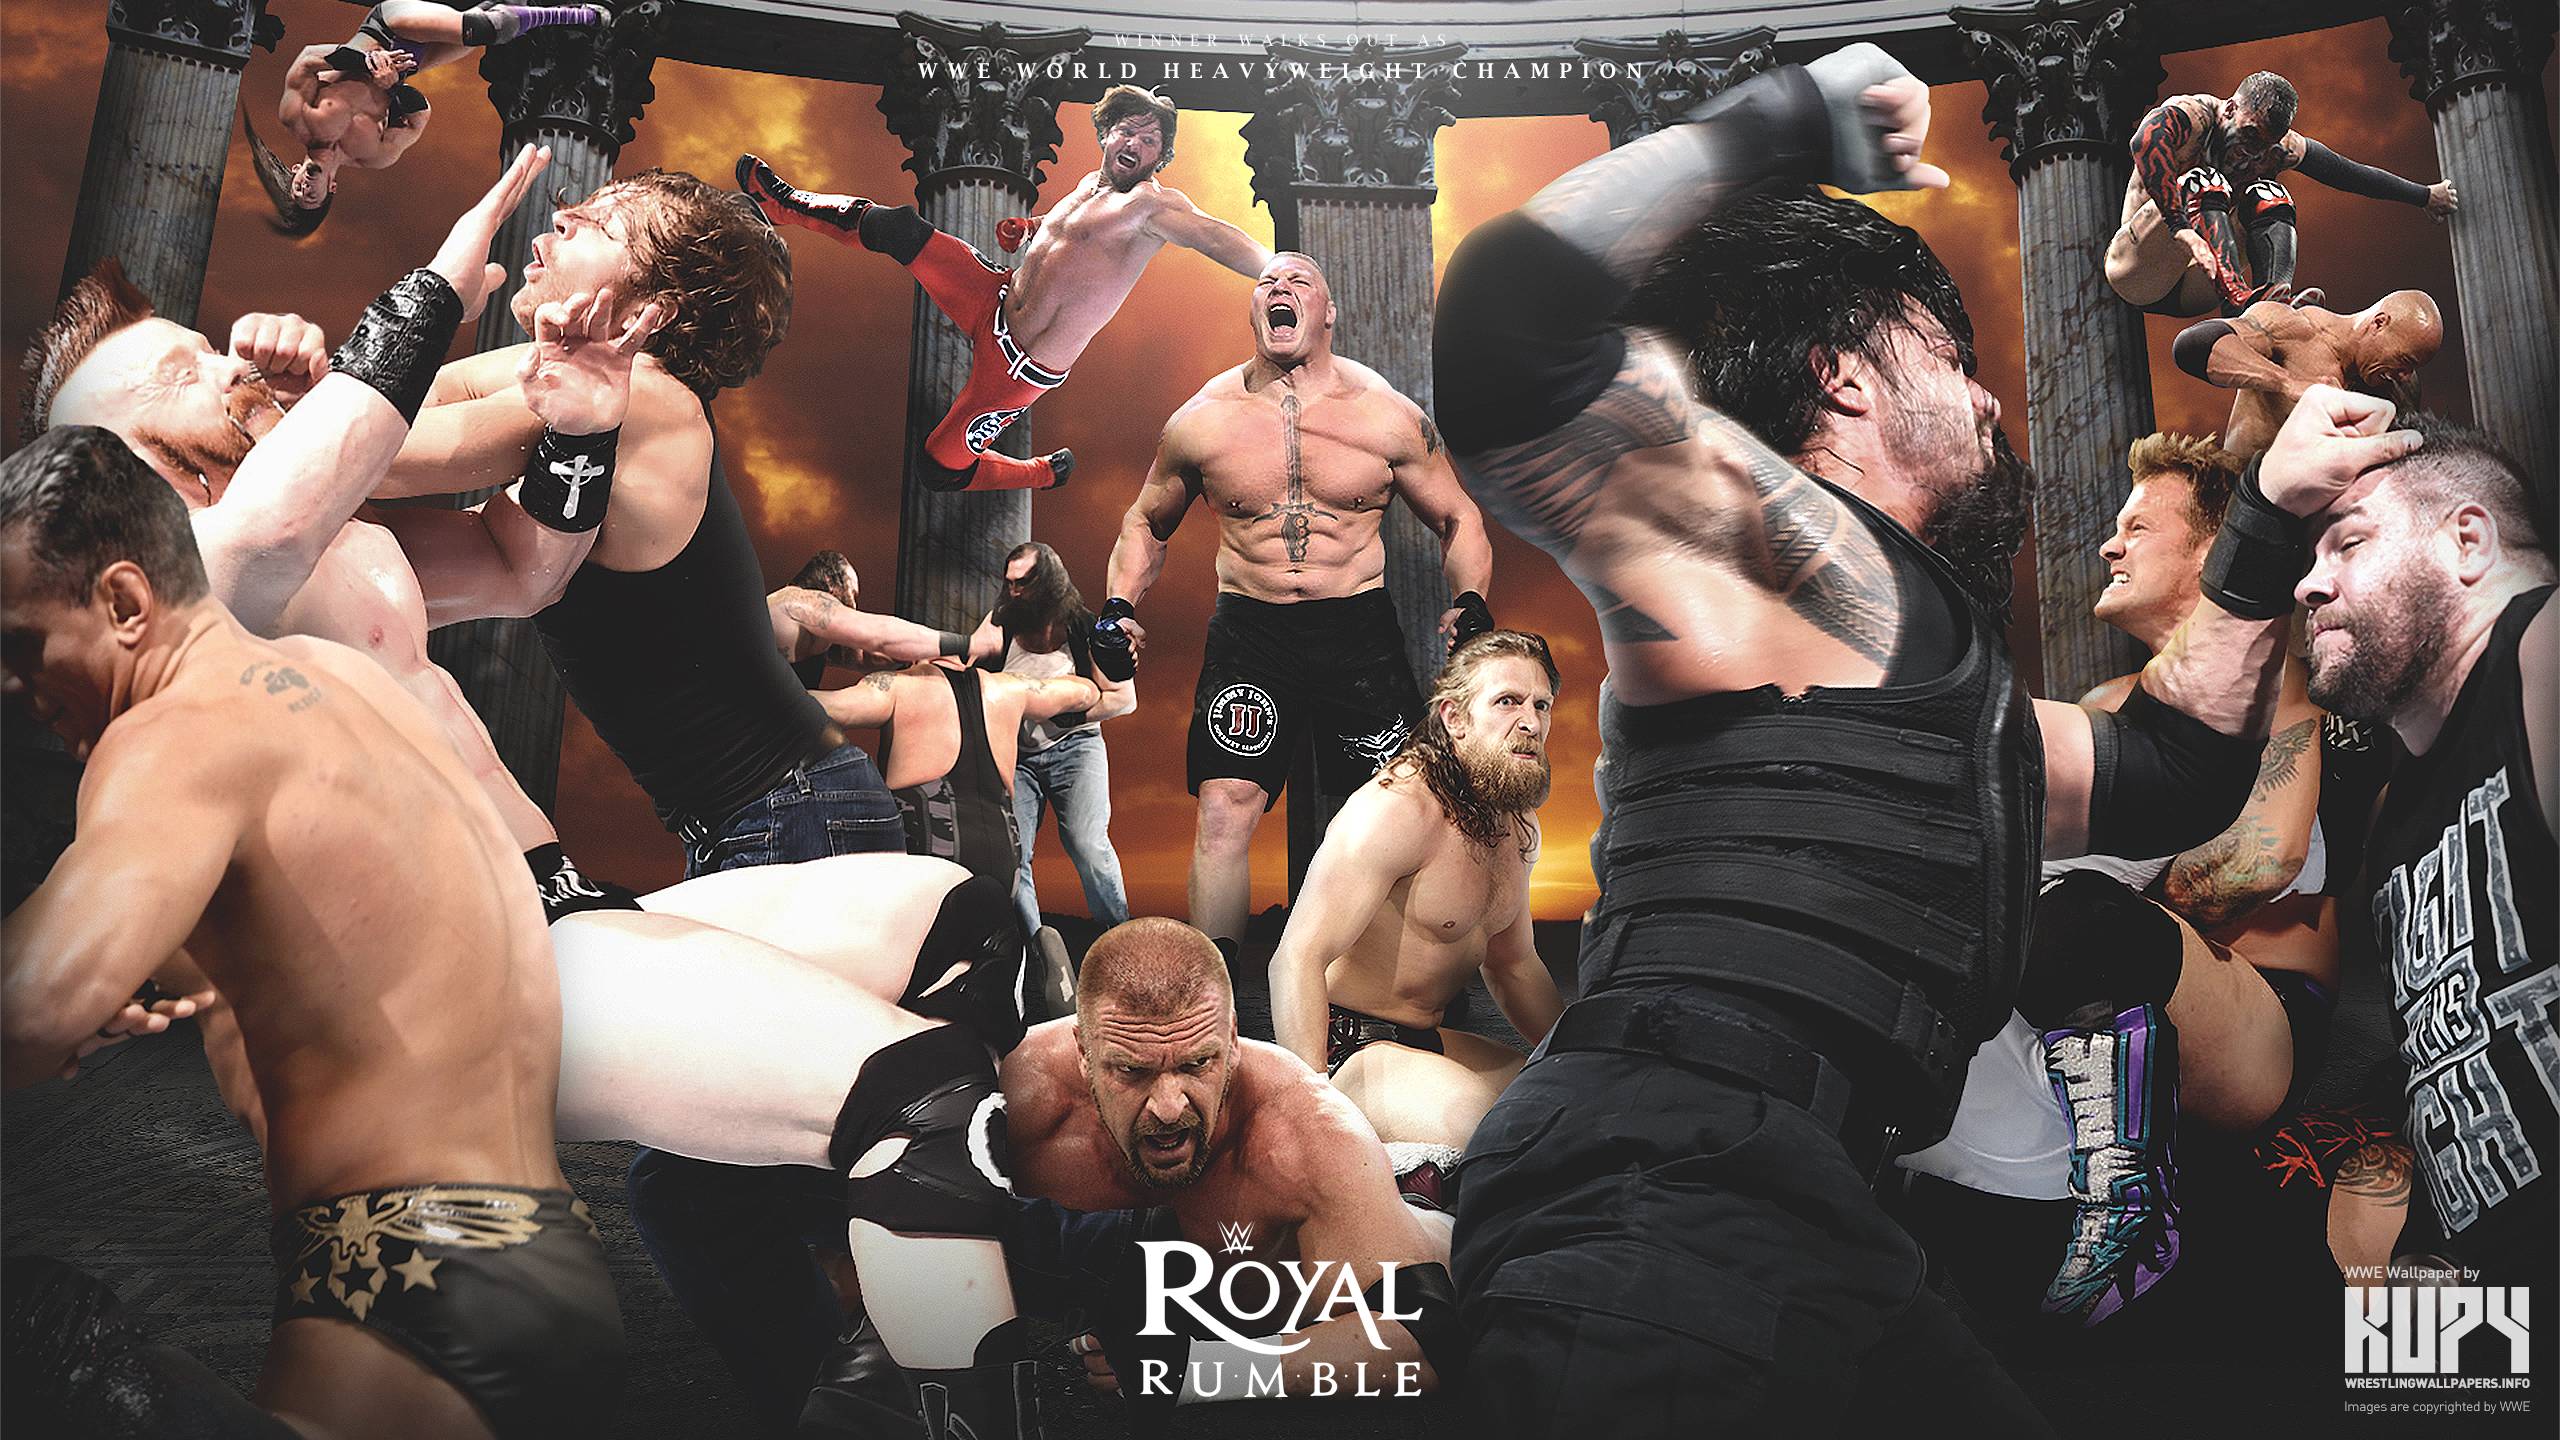 NEW WWE Royal Rumble 2016 wallpaper! Wrestling Wallpaper